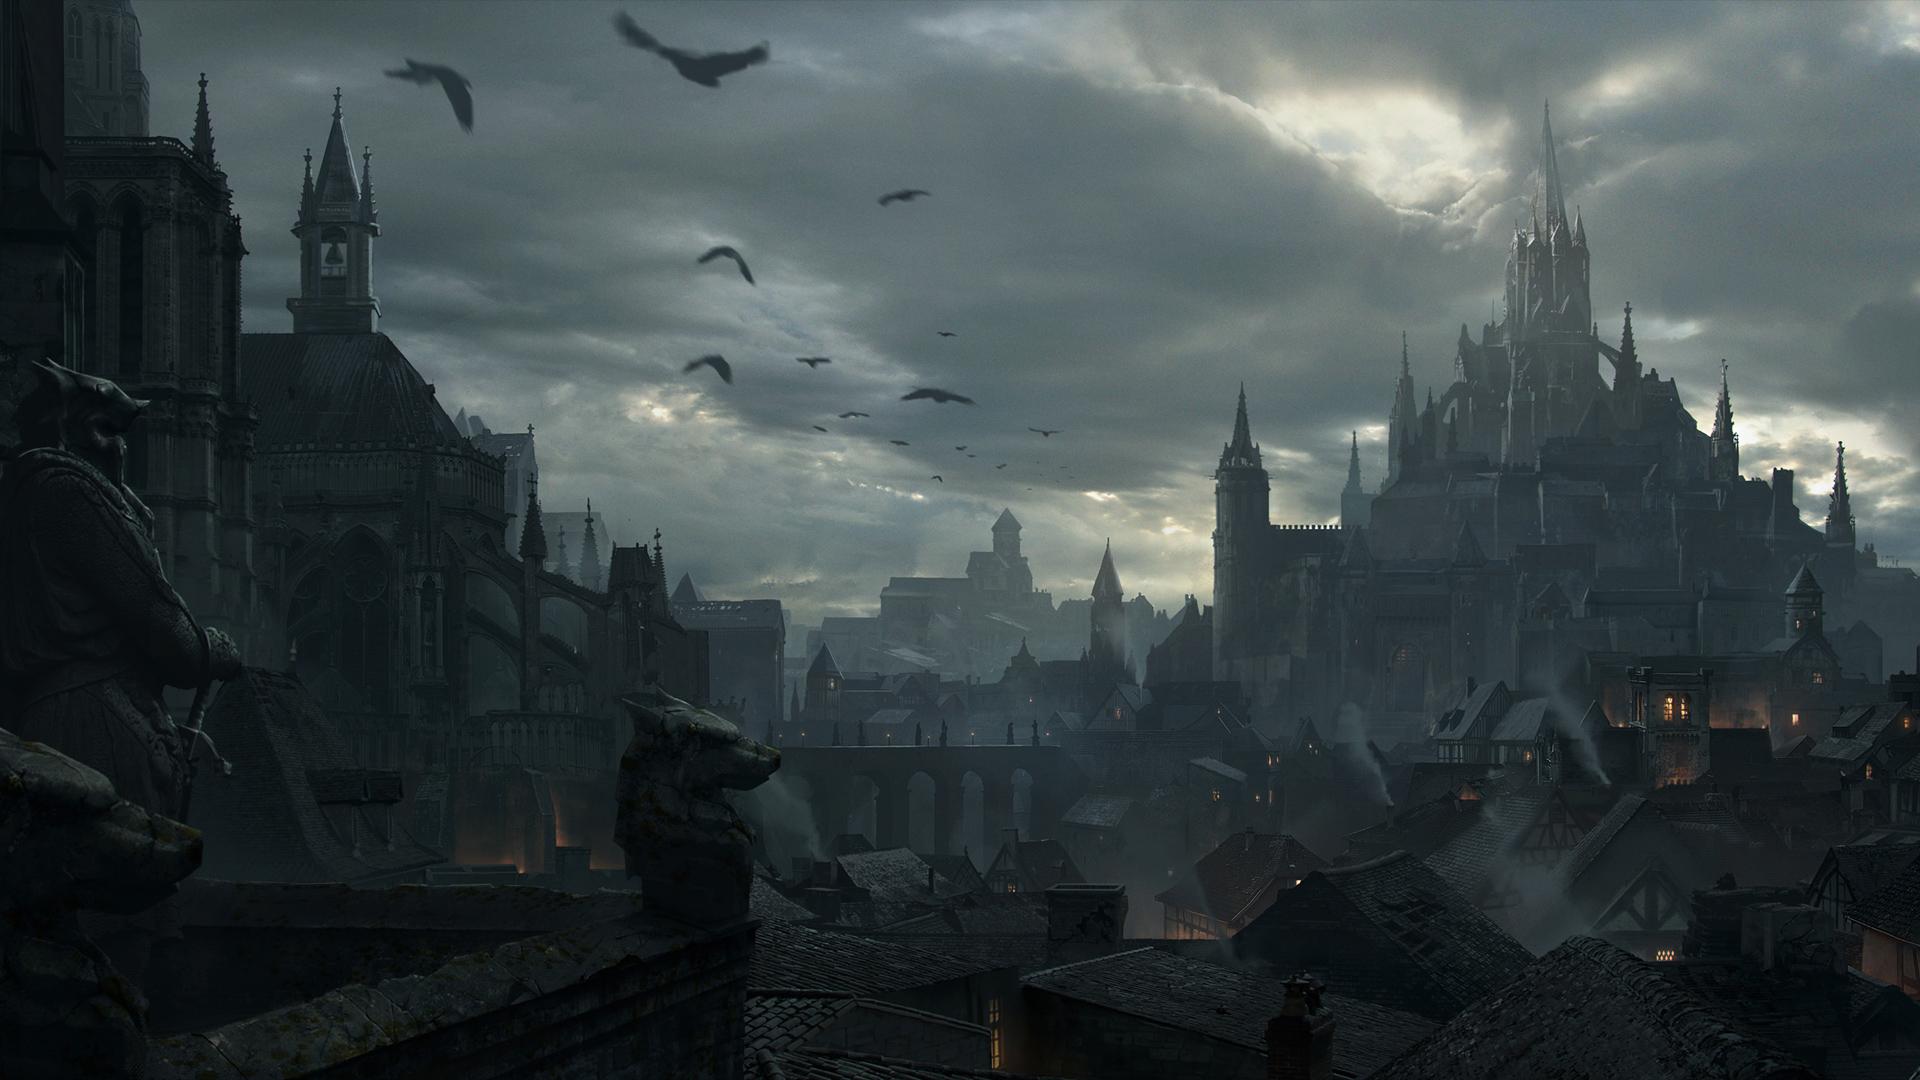 Dark city. Wallpaper from Diablo Immortal